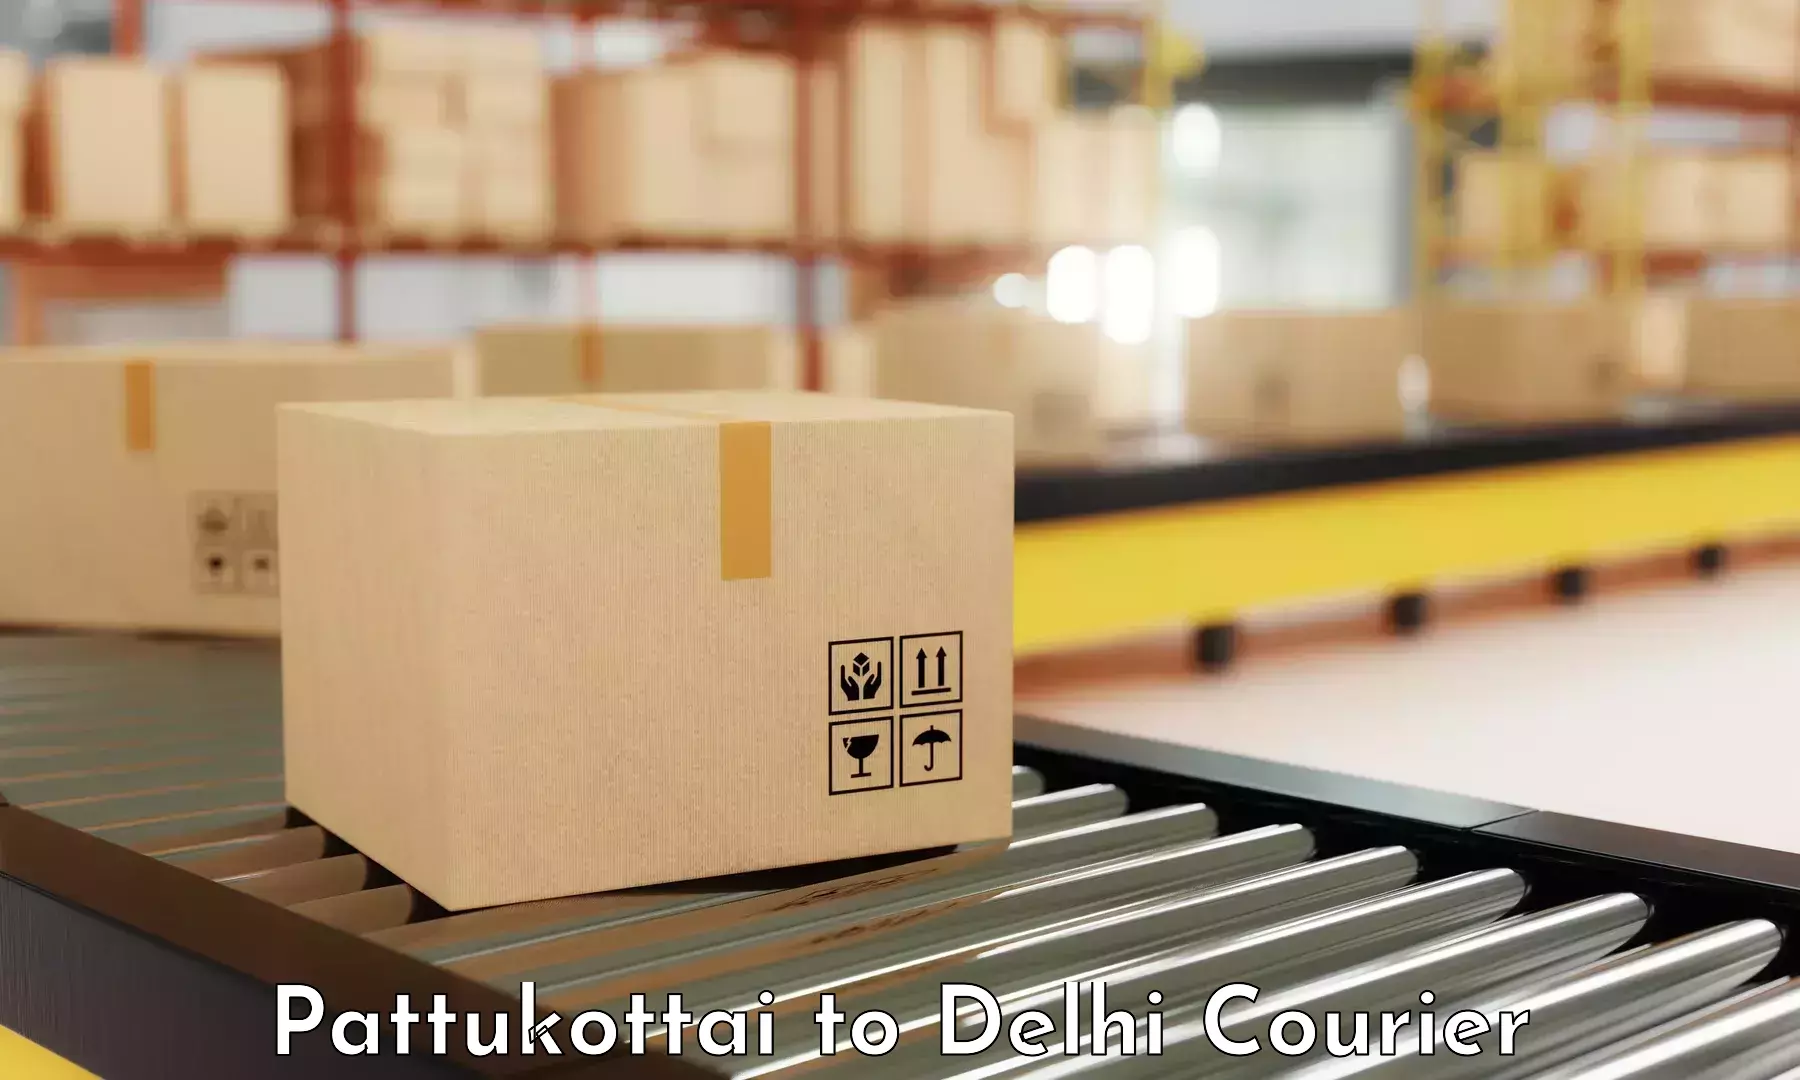 High-performance logistics Pattukottai to Delhi